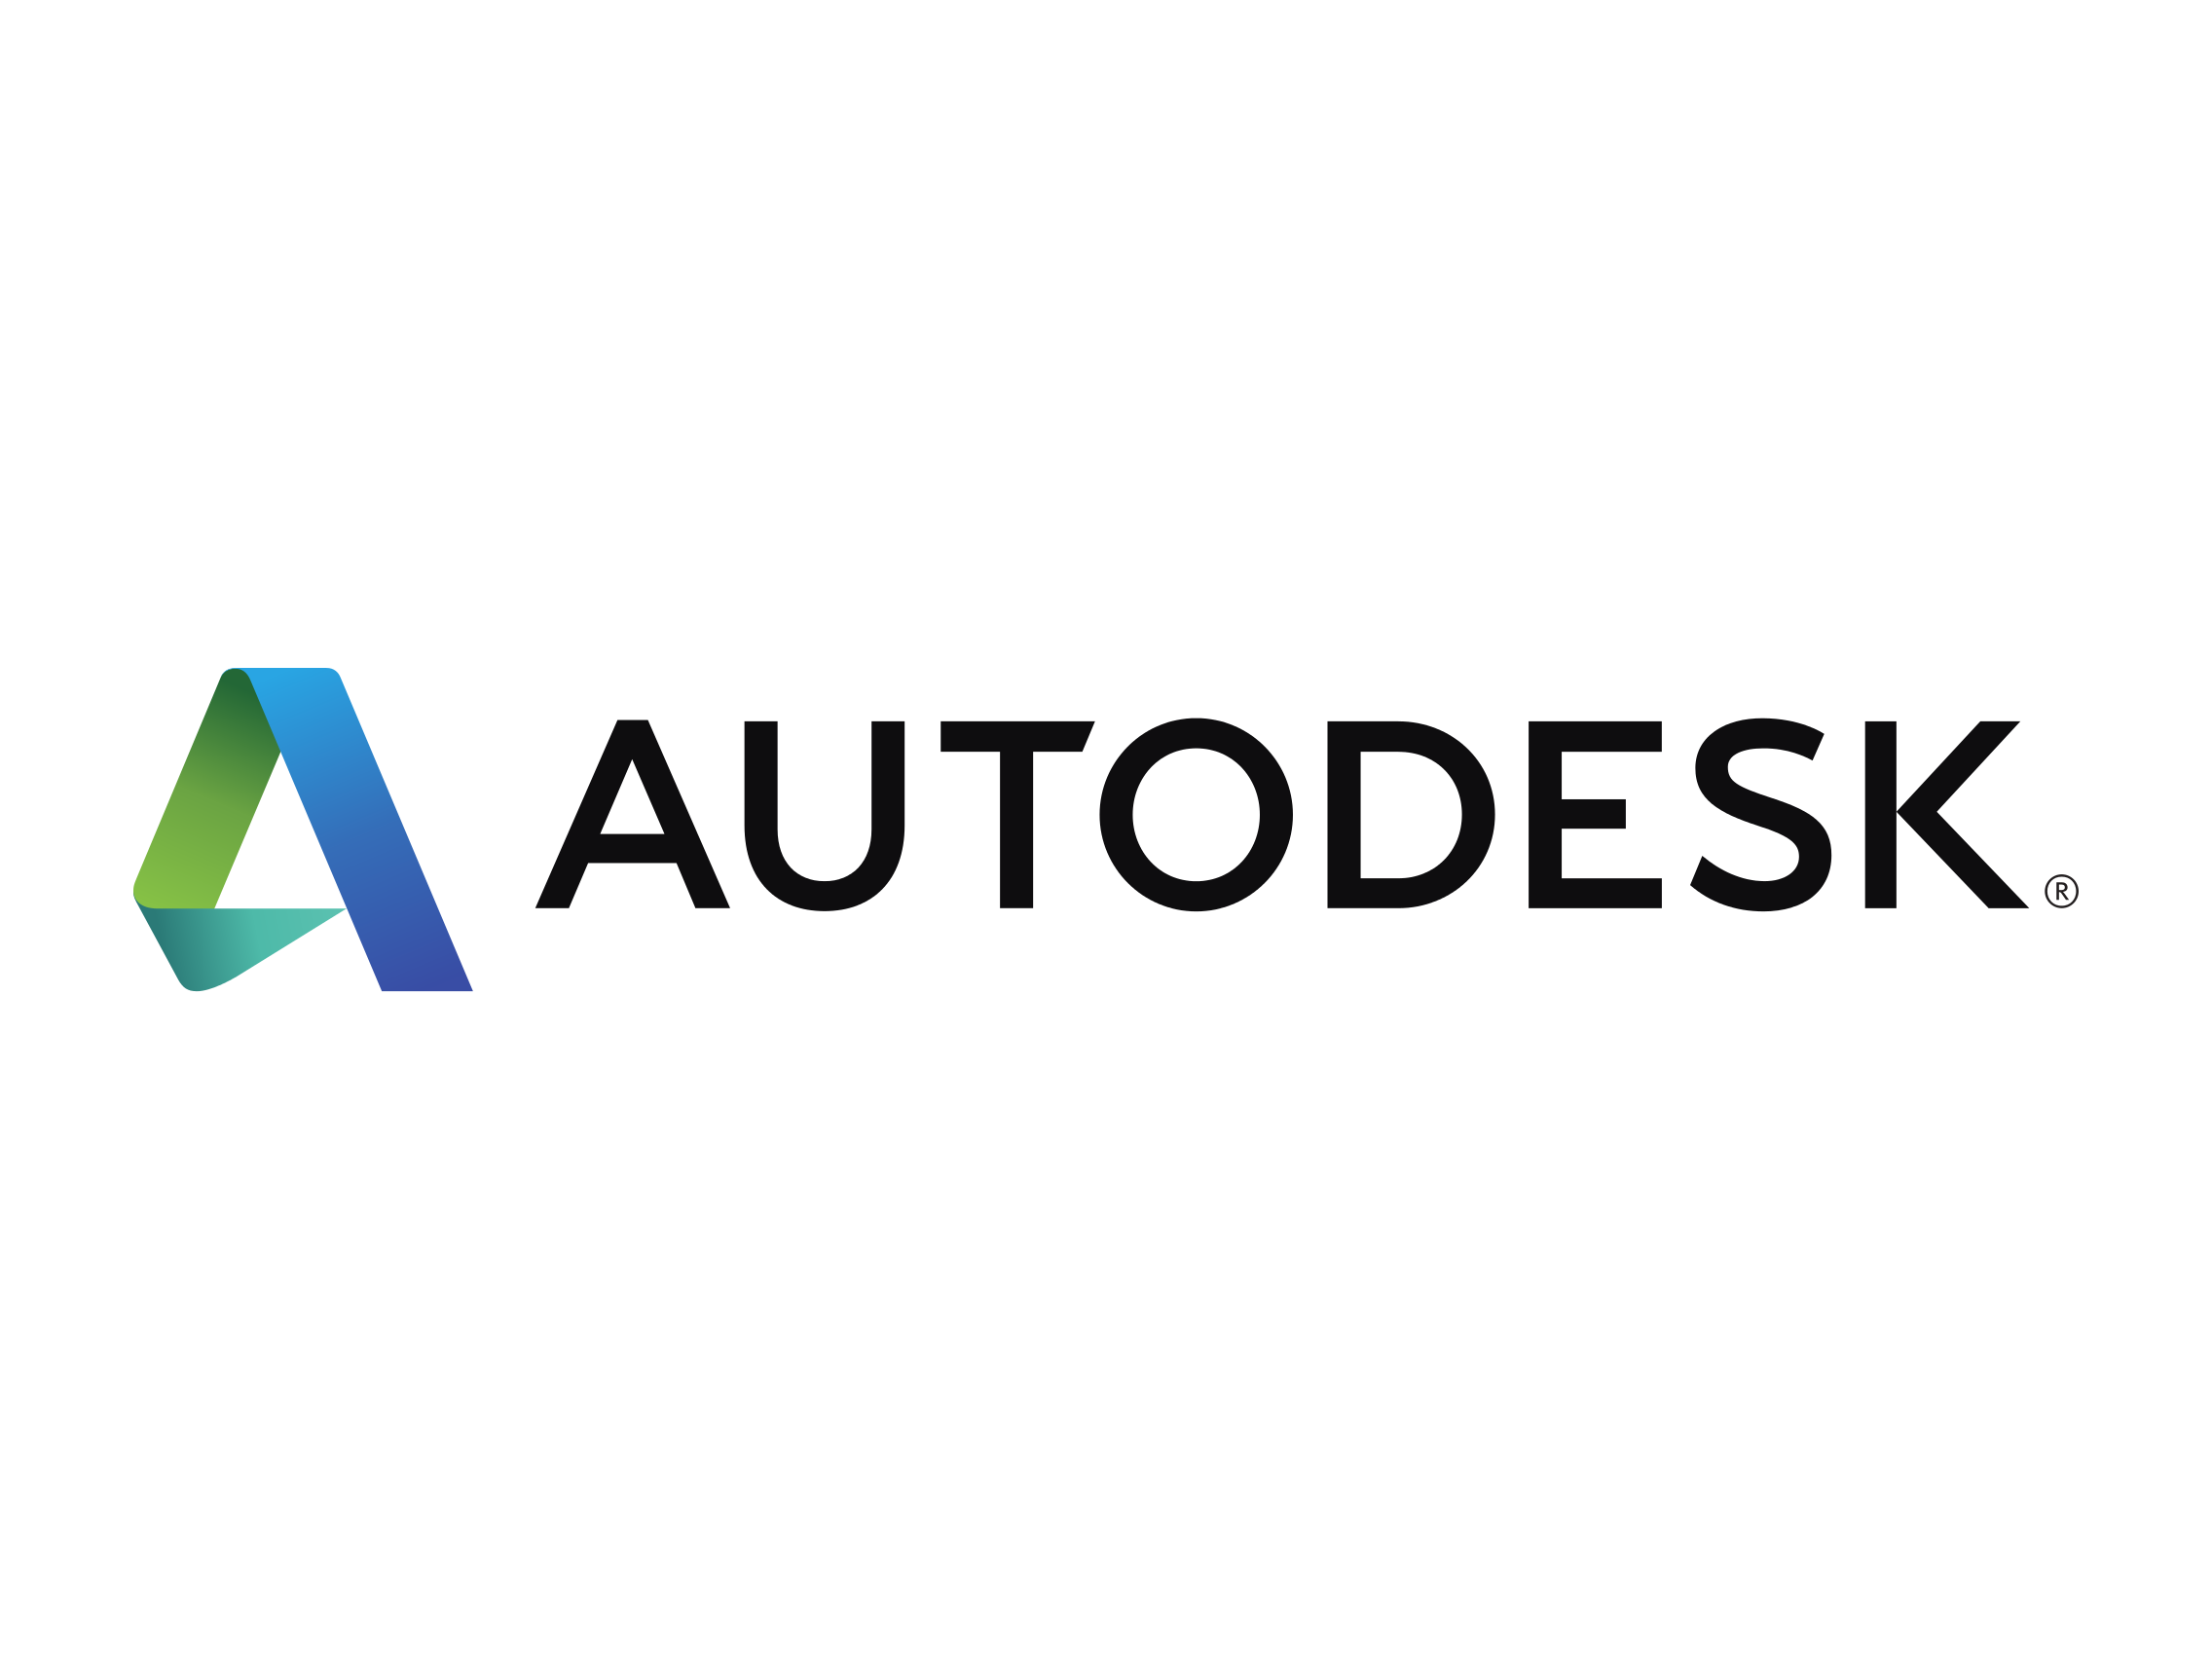  Autodesk's logo 